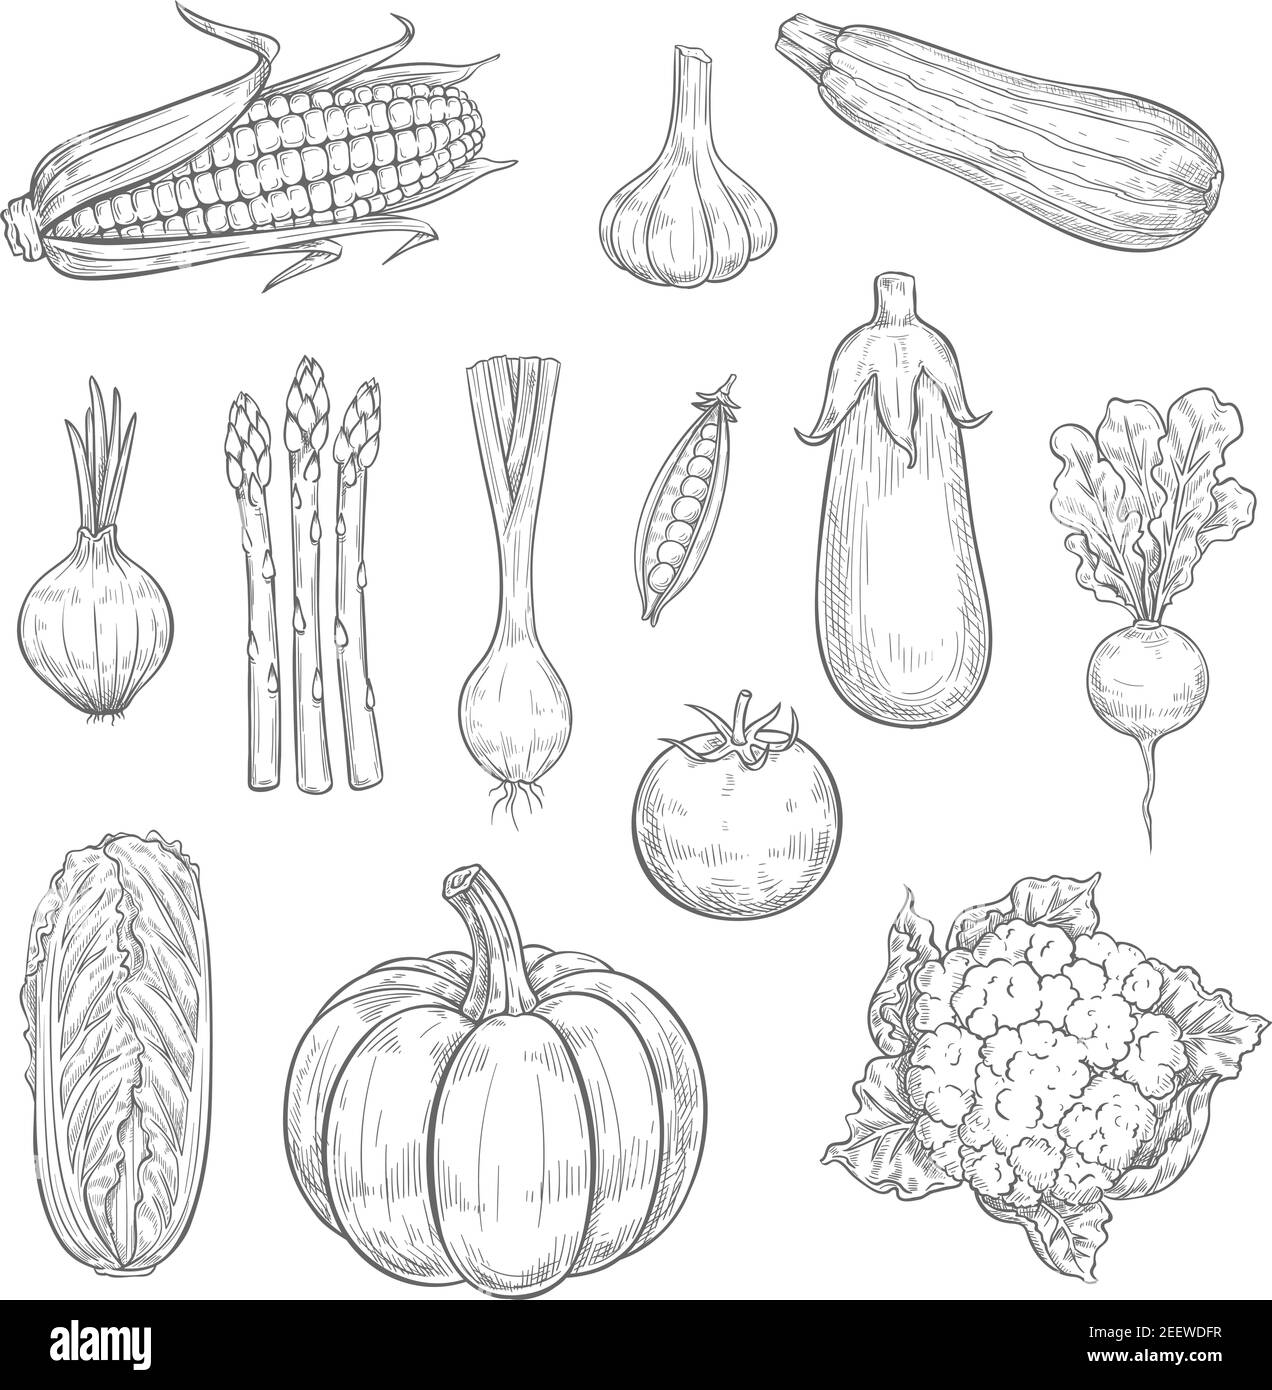 Les légumes esquissent des icônes et des légumes naturels. Ensemble vectoriel isolé de courgettes, carottes ou citrouille et poivre, aubergines, radis ou à Illustration de Vecteur